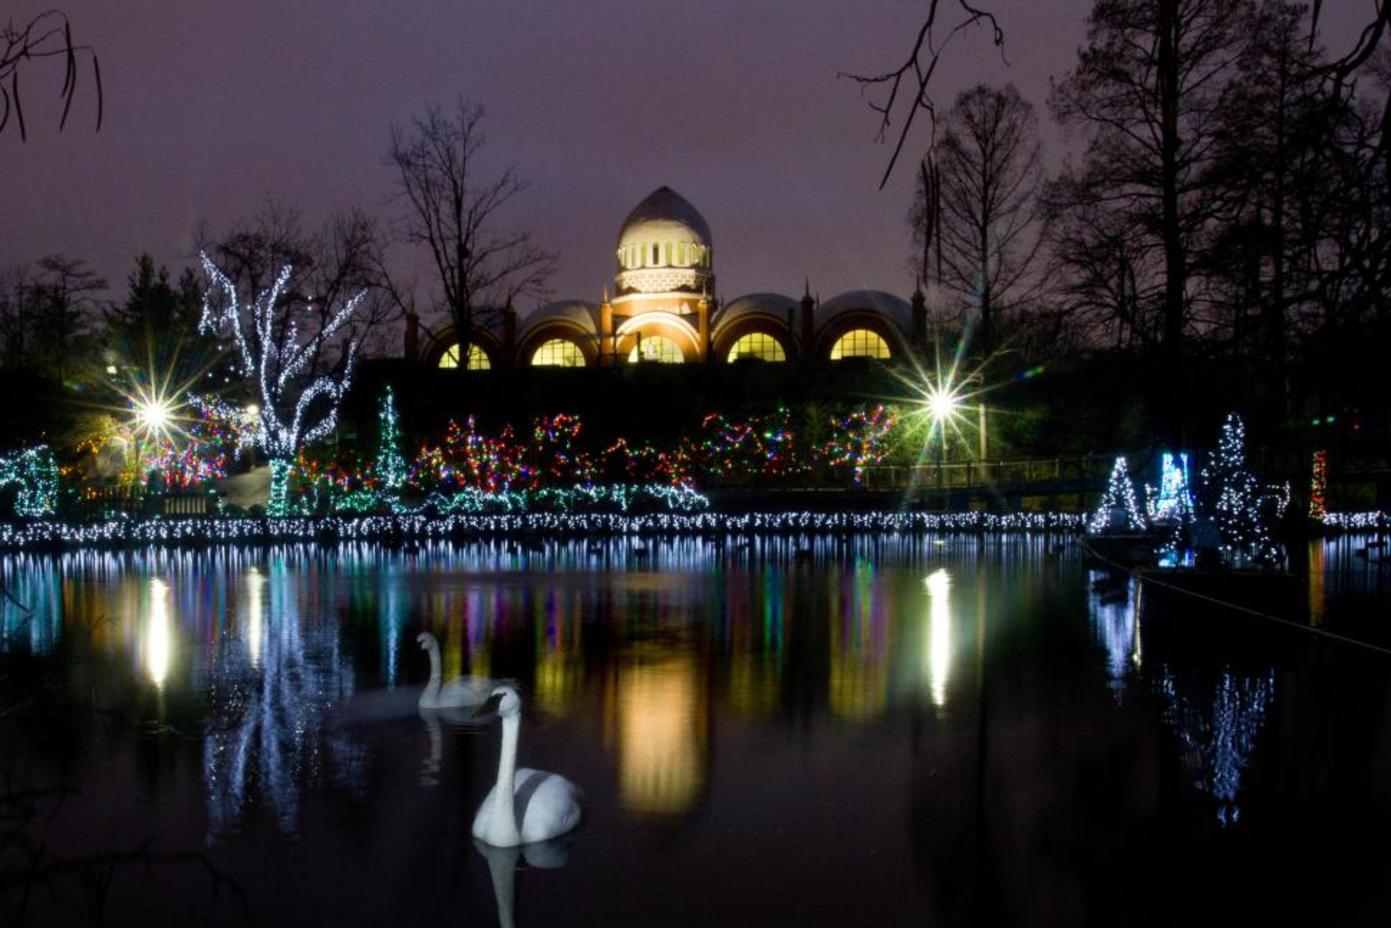 Swan Lake during Festival of Lights at Cincinnati Zoo